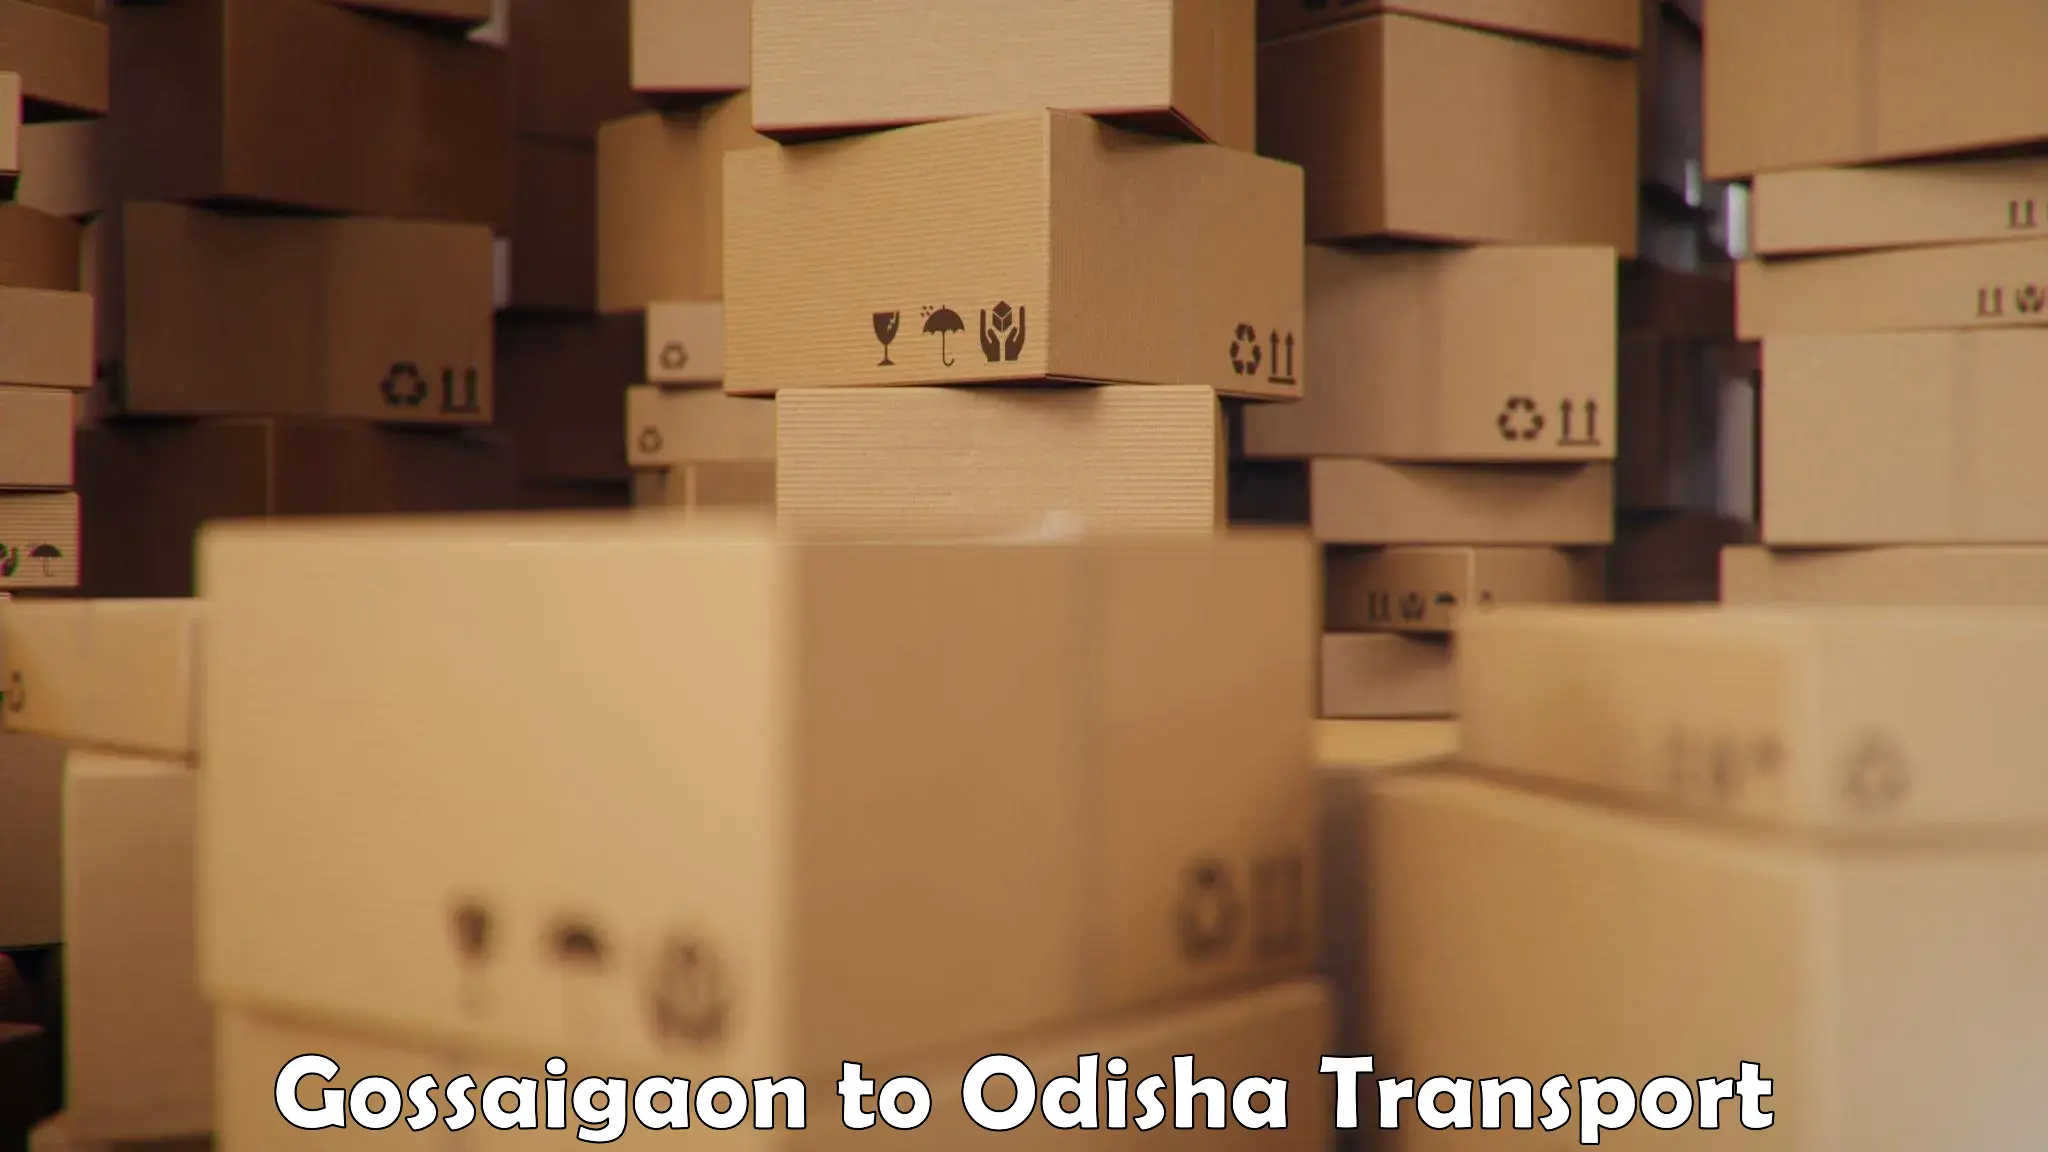 International cargo transportation services Gossaigaon to Bheden